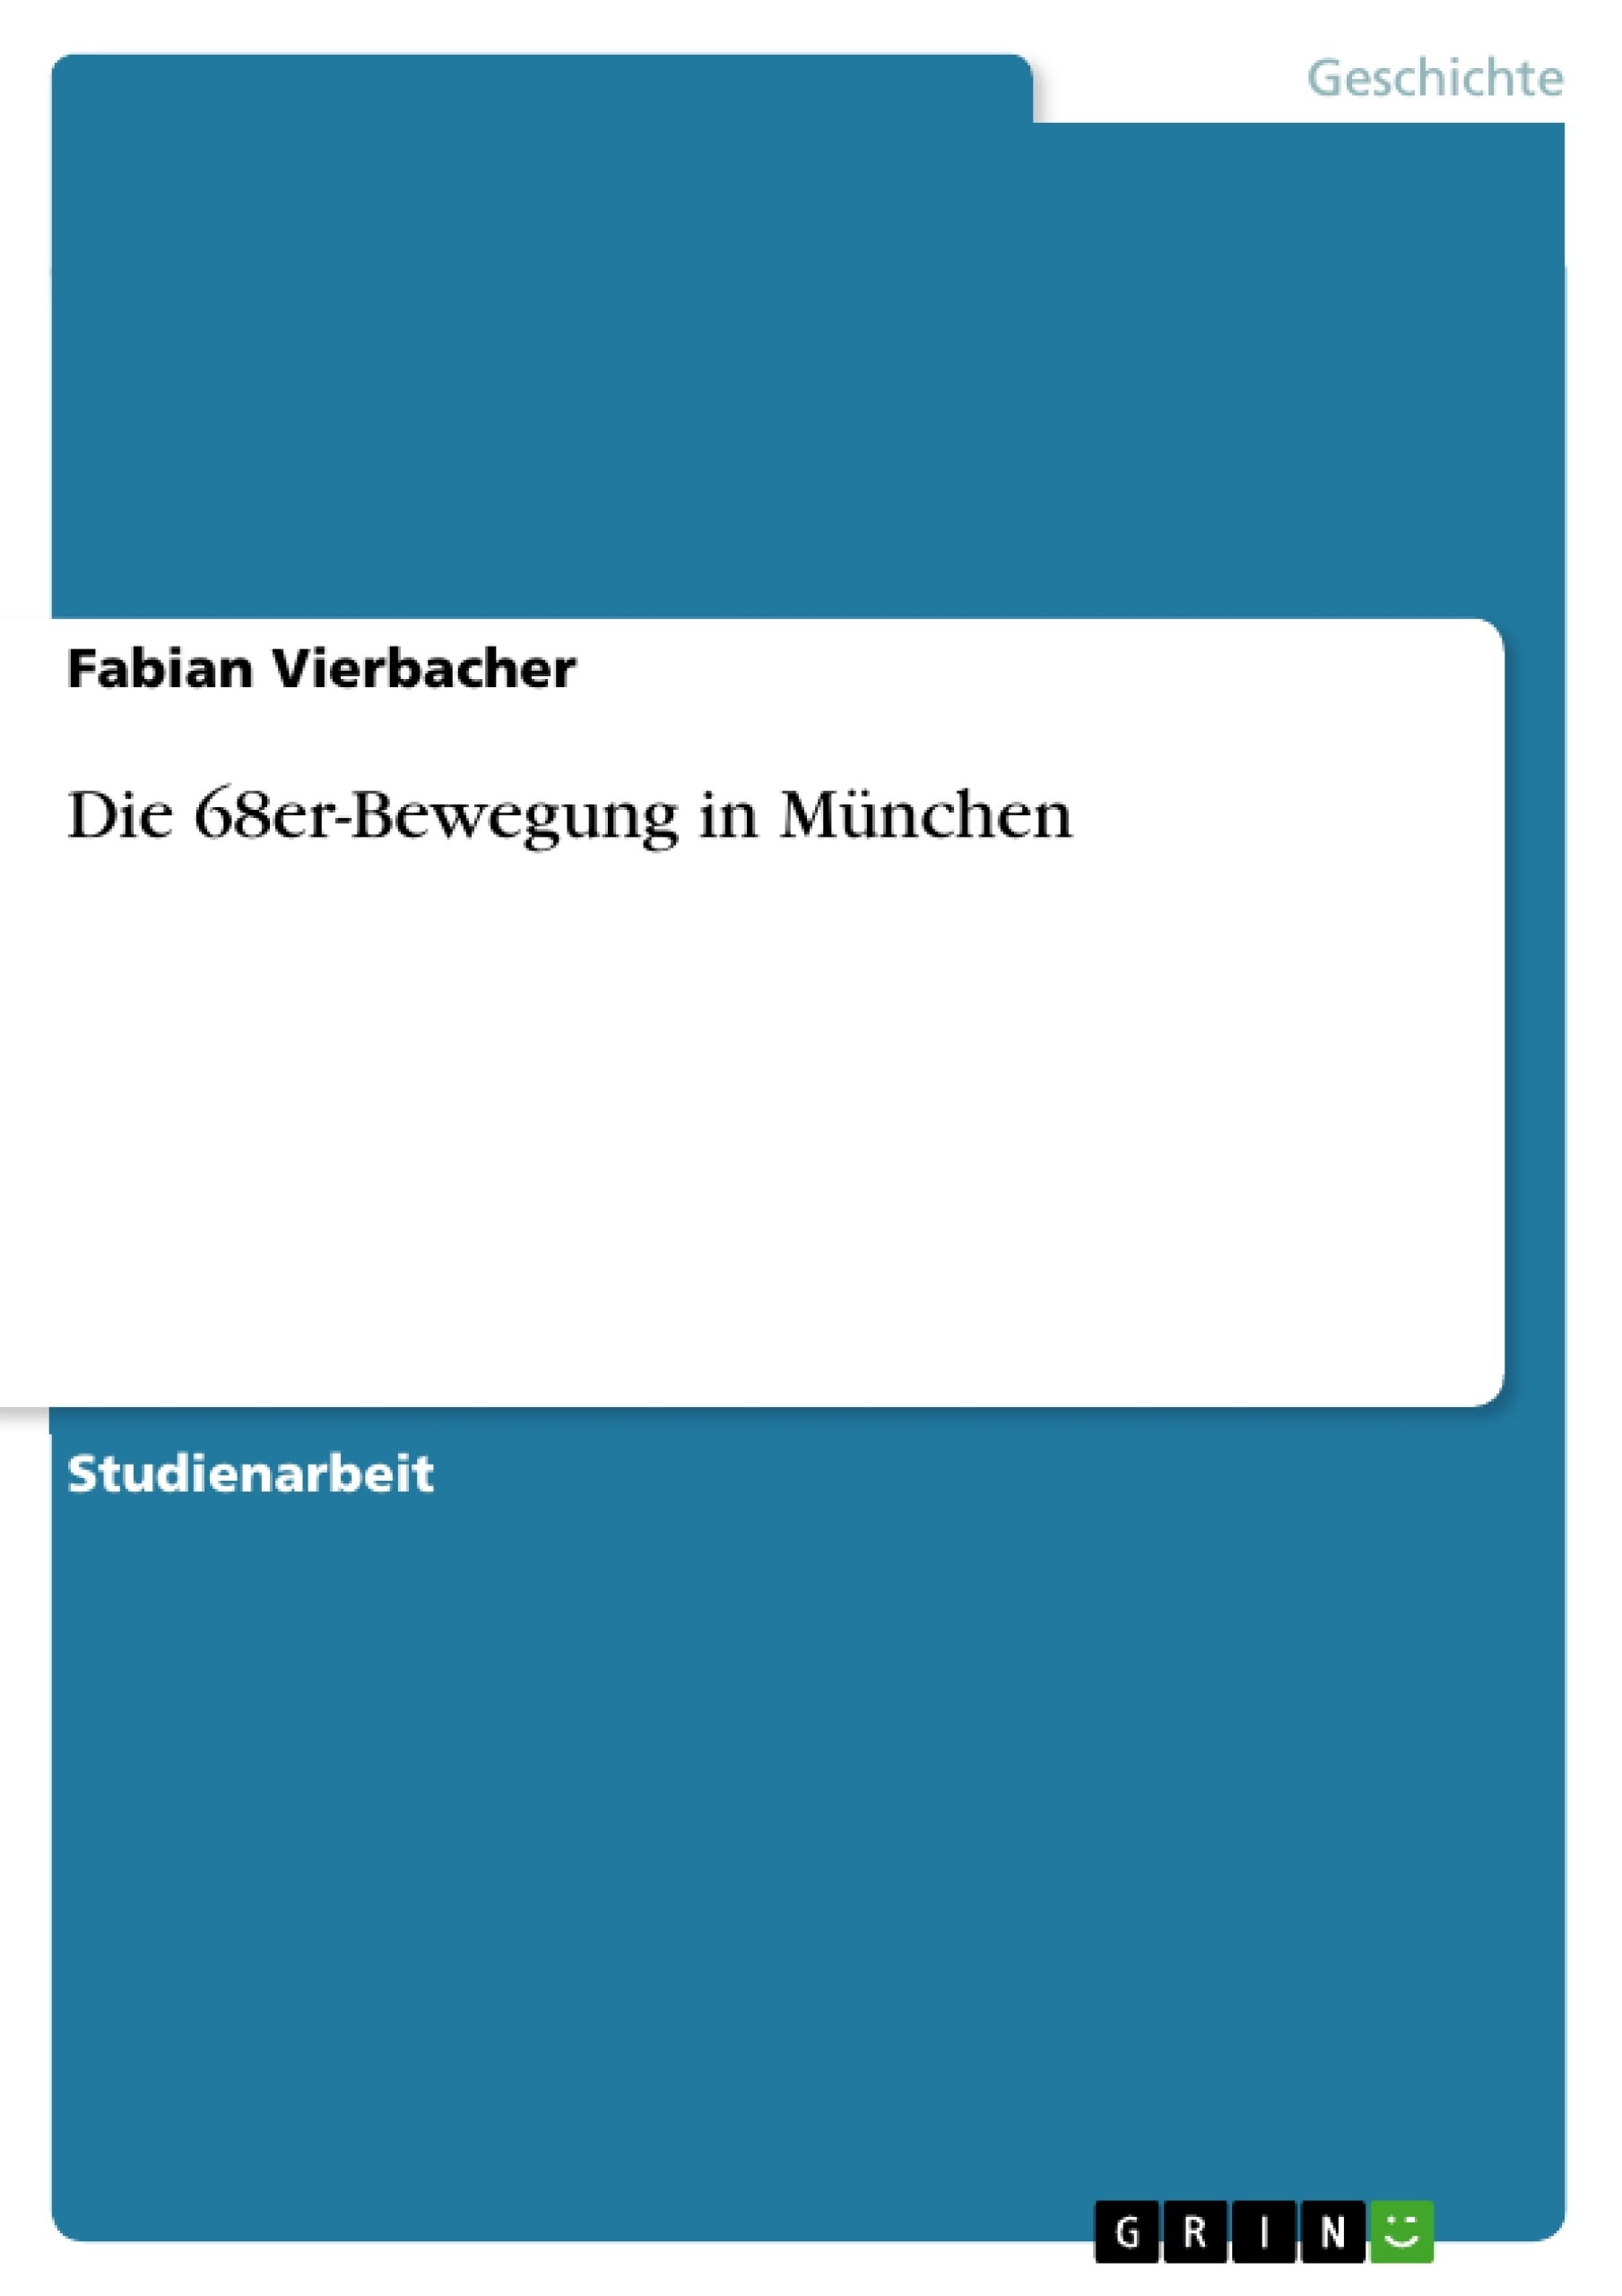 Título: Die 68er-Bewegung in München